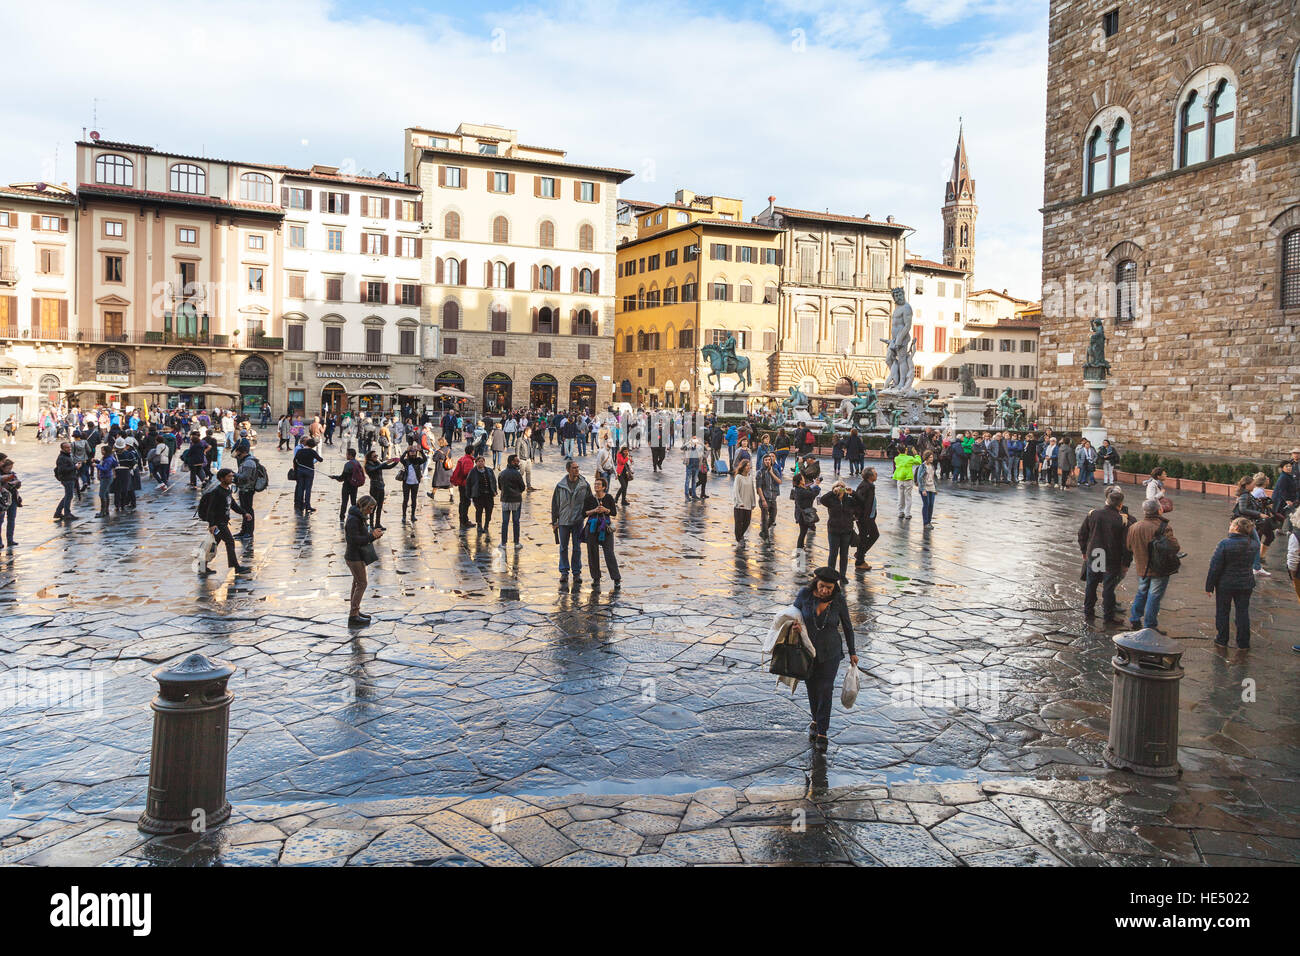 Florenz, Italien - 6. November 2016: Touristen auf der Piazza della Signoria in Florenz Stadt nach Regen. Diese öffentliche Platz in der Nähe von Rathaus war Zentrum der pol Stockfoto